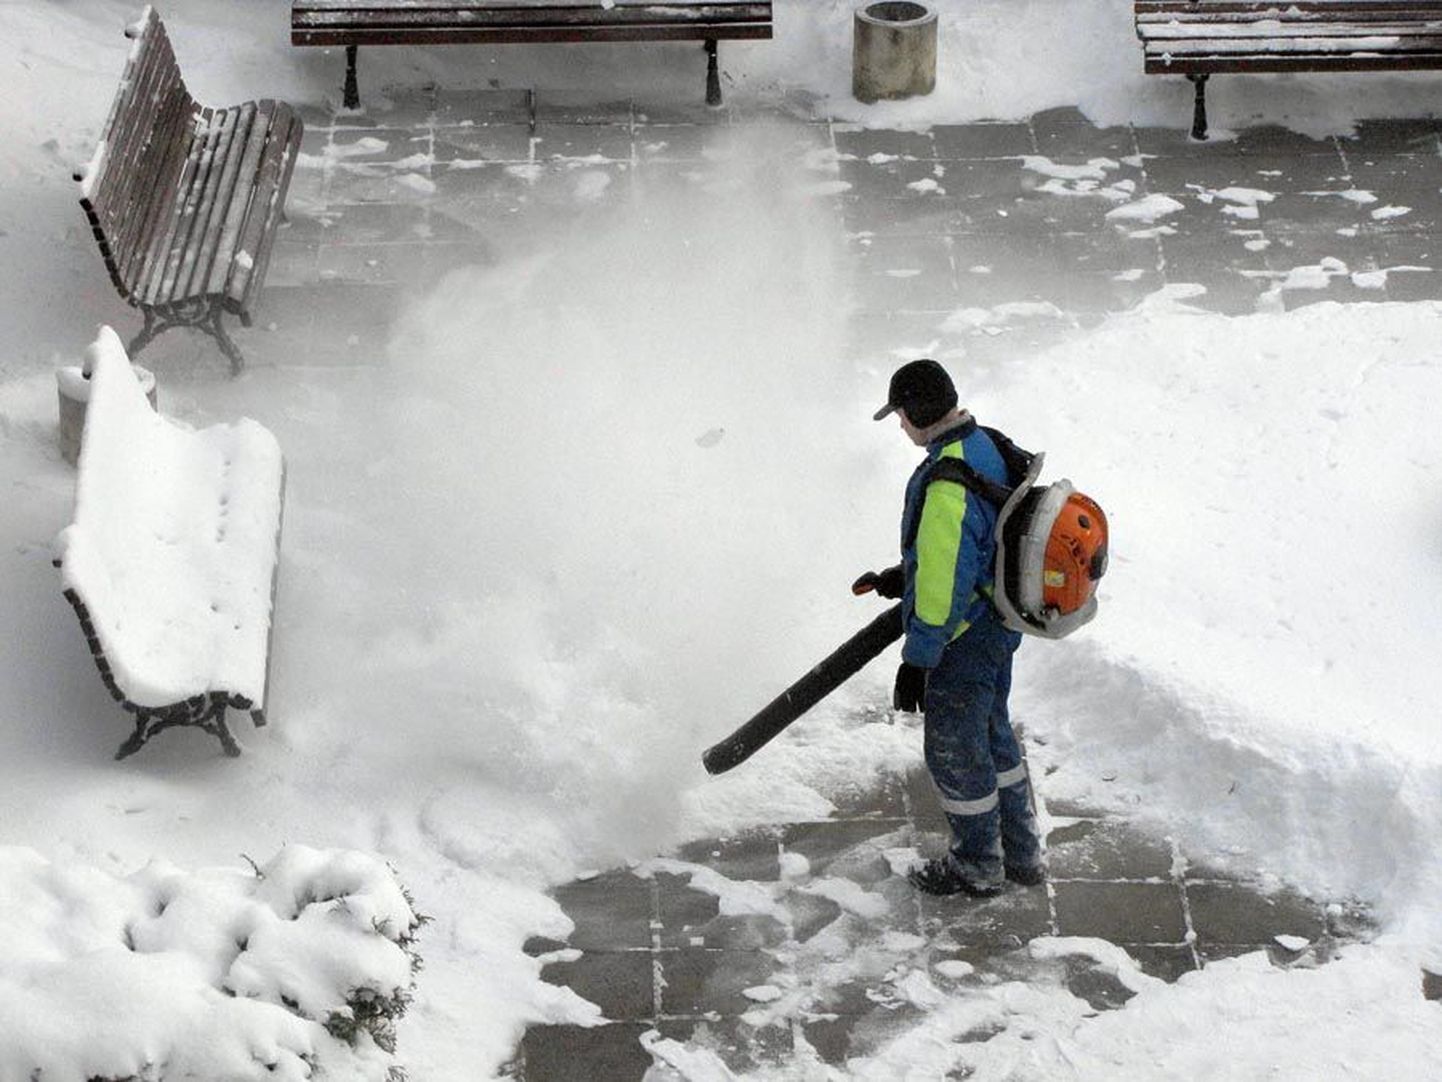 Kui viimased paarkümmend aastat on Viljandi kesklinna lumest puhastanud inimesed olnud mõne heakorrafirma töötajad, pole välistatud, et järgmisel aastal võivad nad olla linnavalitsuse palgal.